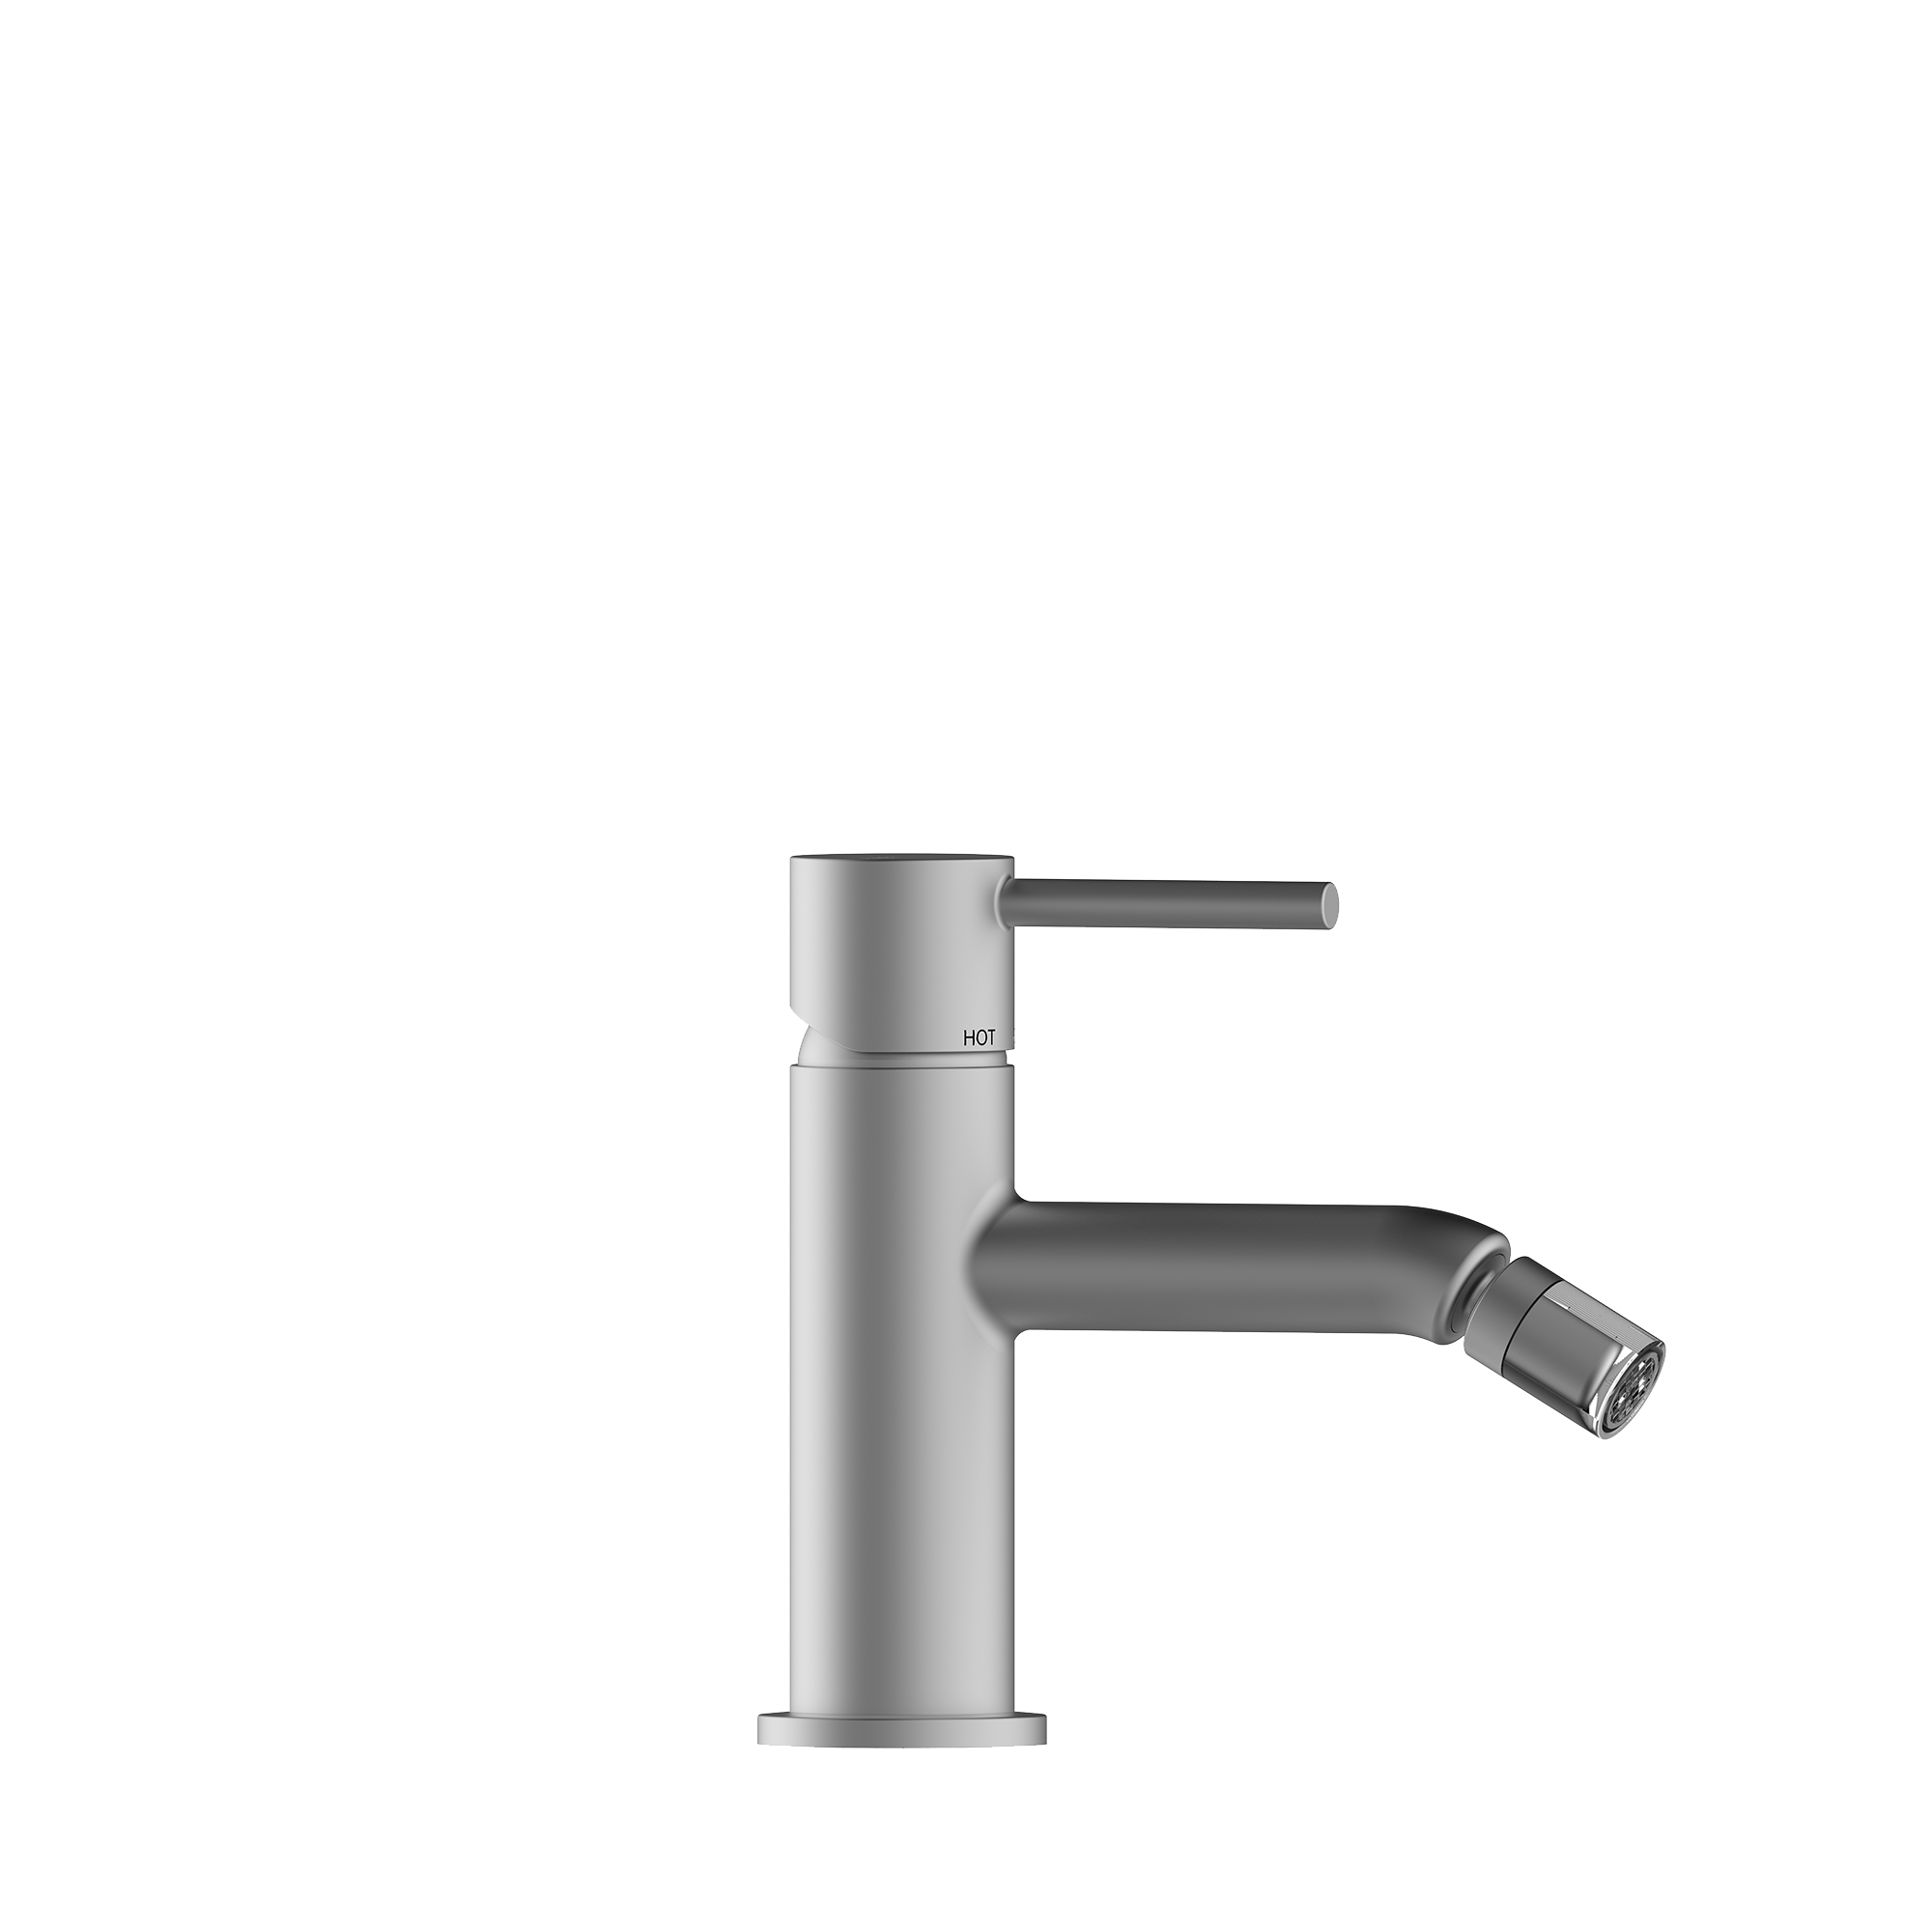 Однорычажный смеситель для биде BOSSINI TEO Z00702.094 c донным клапаном, цвет Шлифованный никель